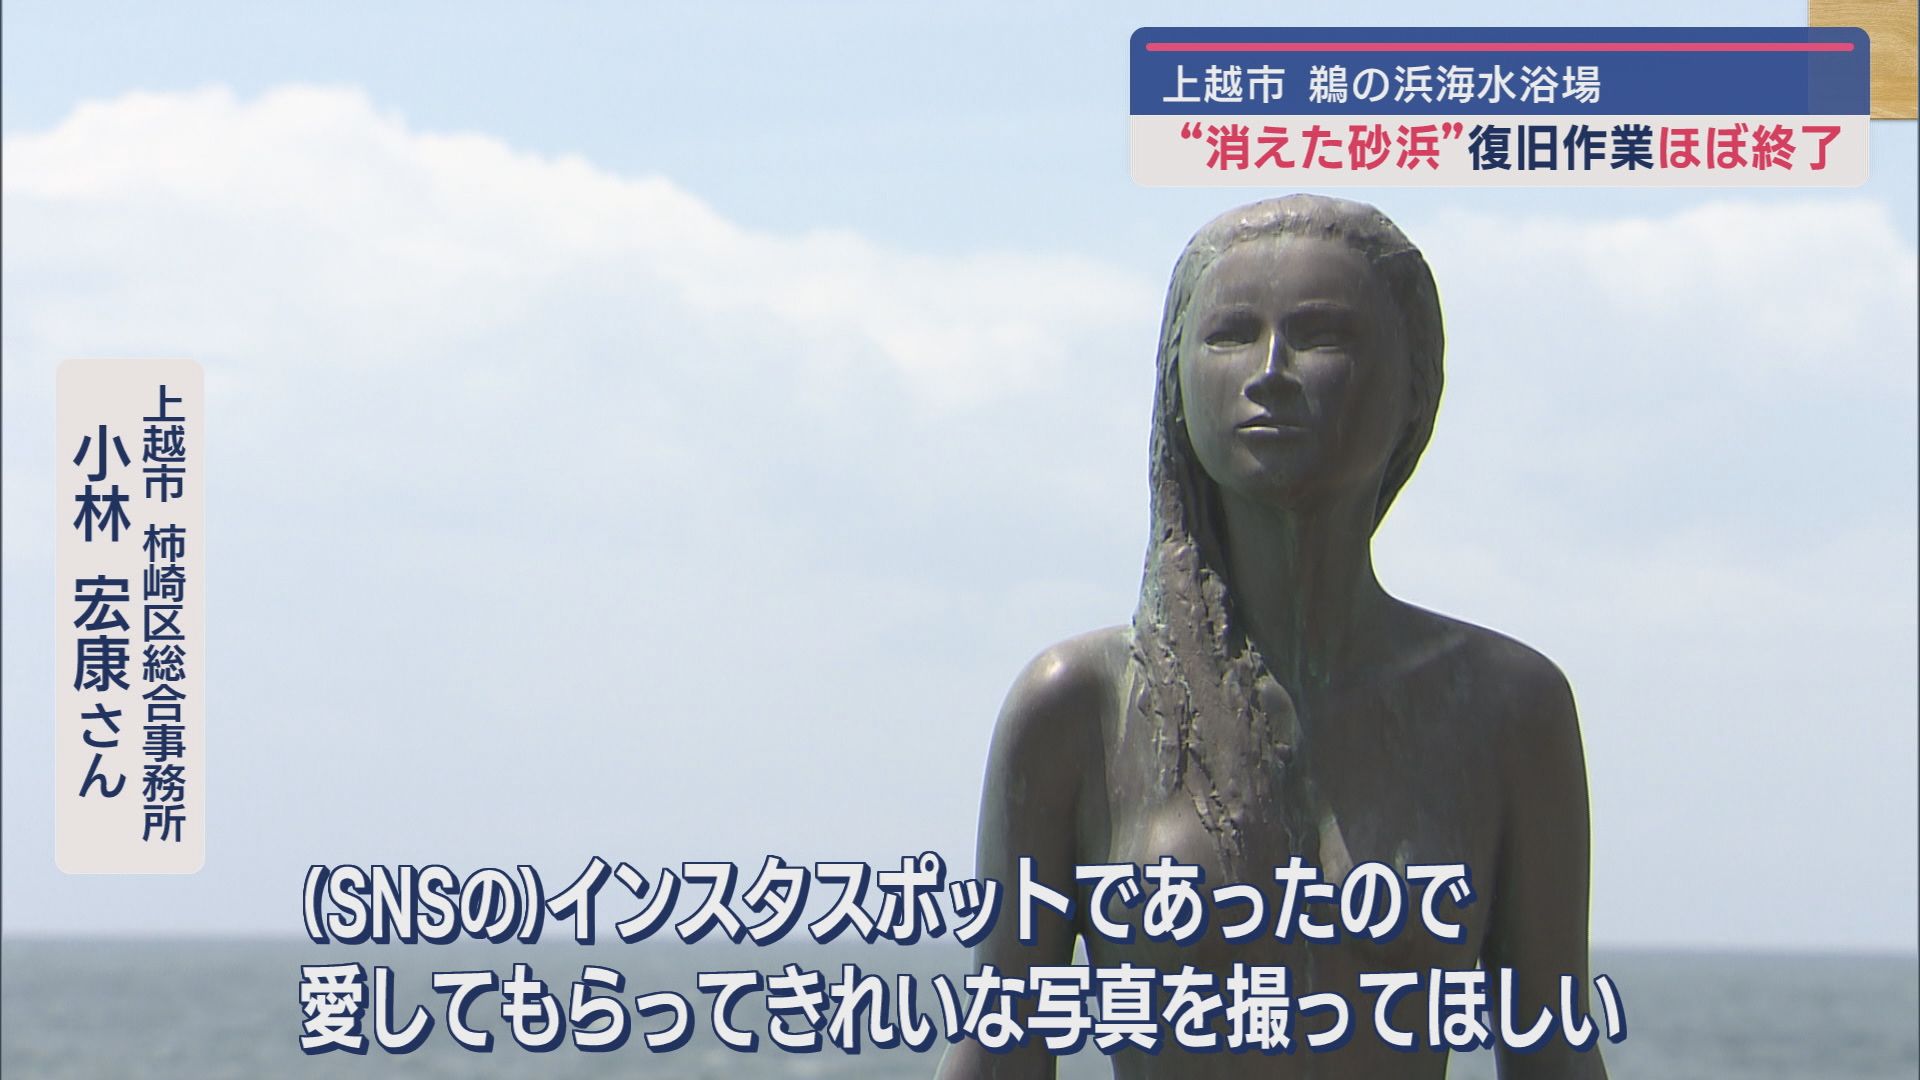 消えた砂浜が復活!?規模縮小も7月13日に海開き決定－人魚像も場所を変え再設置【新潟･上越市】